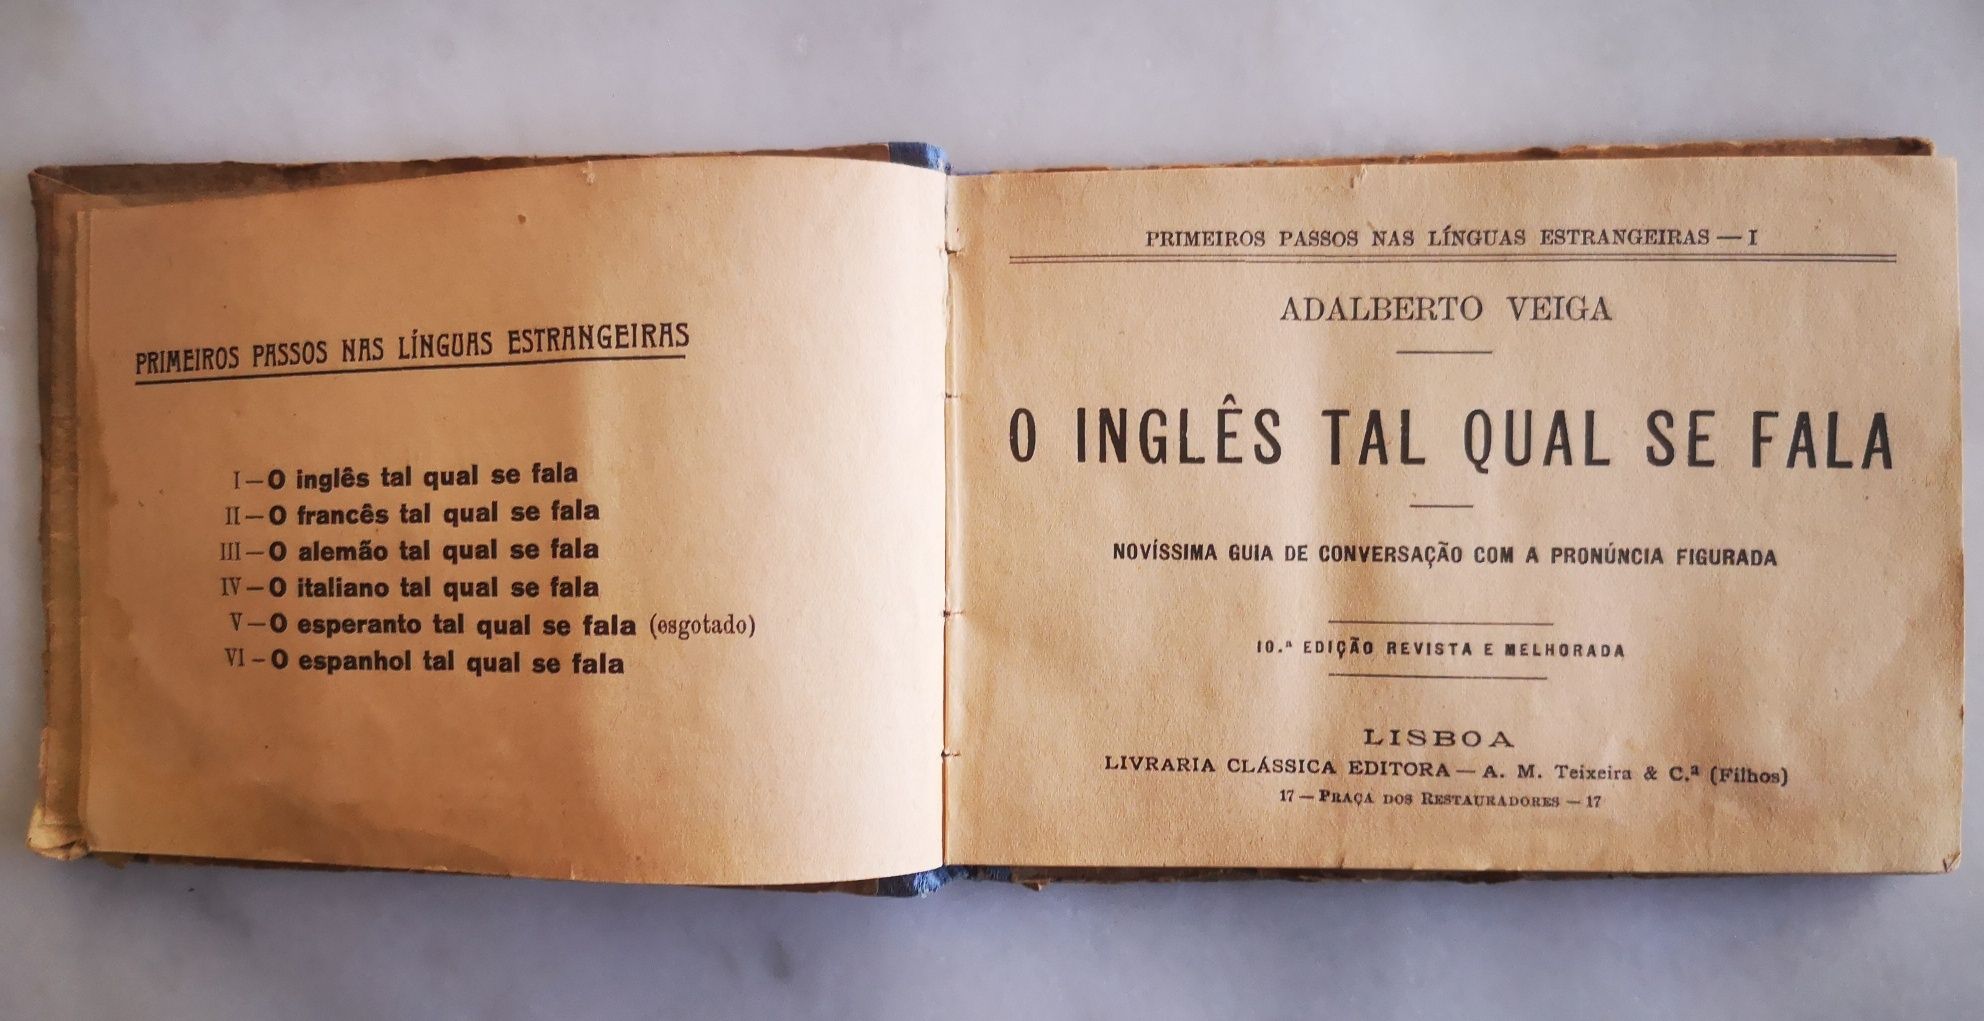 Adalfabeto Veiga de 1905